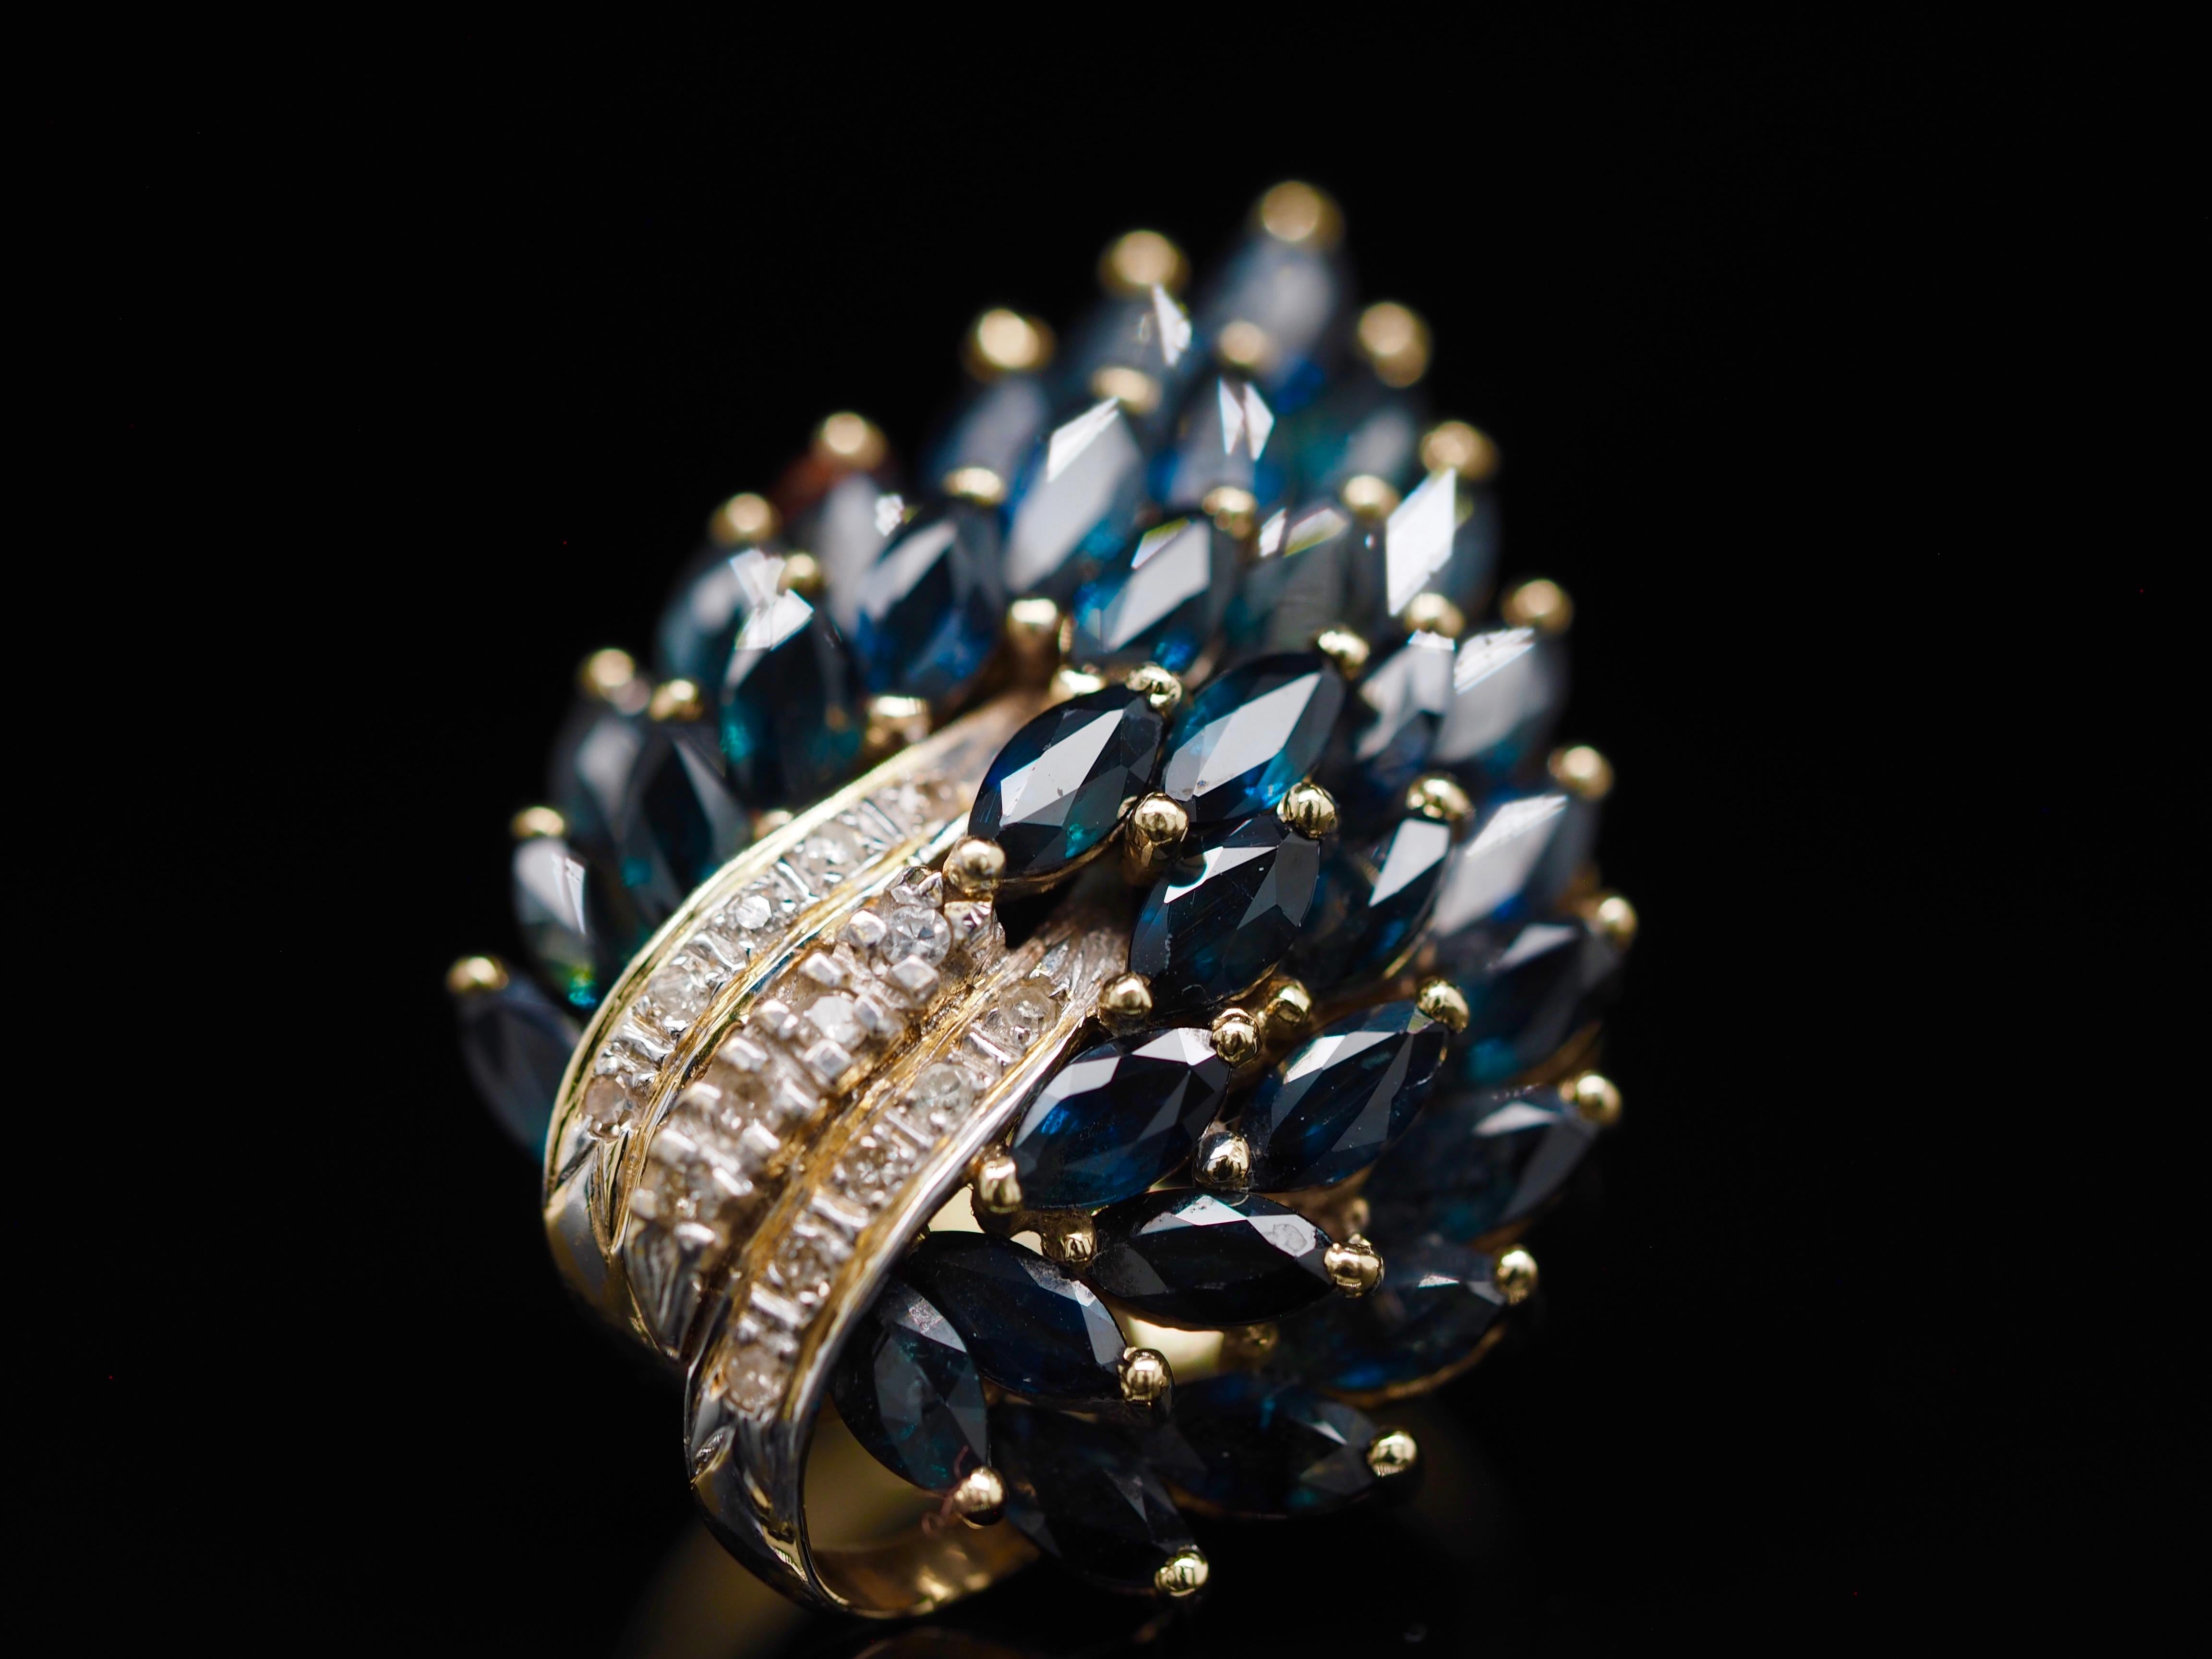 Dieser großartige Ring ist übervoll mit natürlichen blauen marquiseförmigen Saphiren! Er ist das perfekte Statement. Die Art und Weise, wie die Saphire gefasst sind, ergibt ein pfauenartiges Design. Der Hauch von Diamanten ist der perfekte